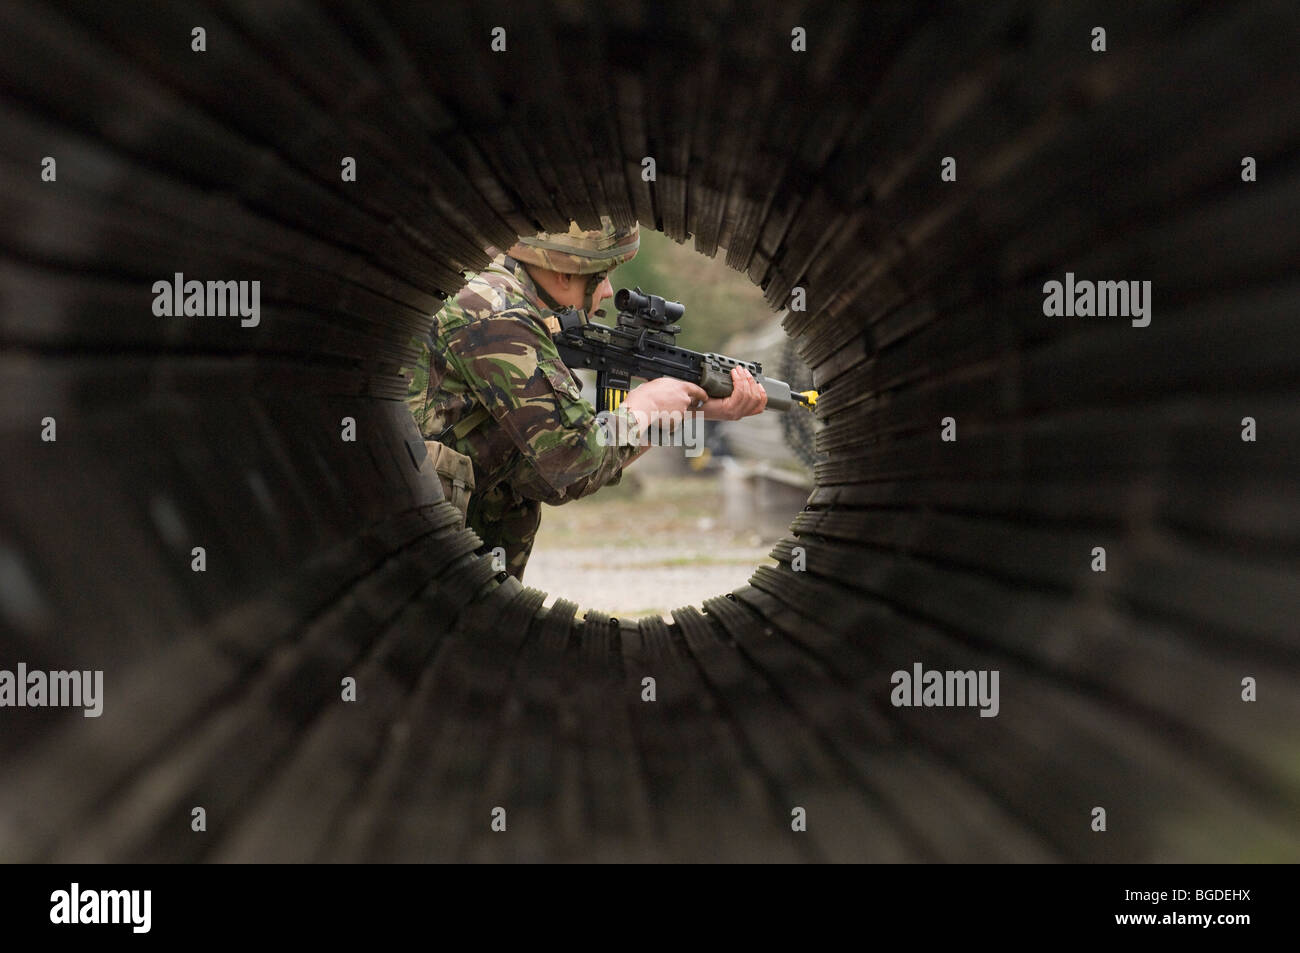 28 Mar 07. Un soldato britannico in combattimento divisa verde si accovaccia e mira fotografata attraverso un tubo . Foto di Matt Kirwan Foto Stock